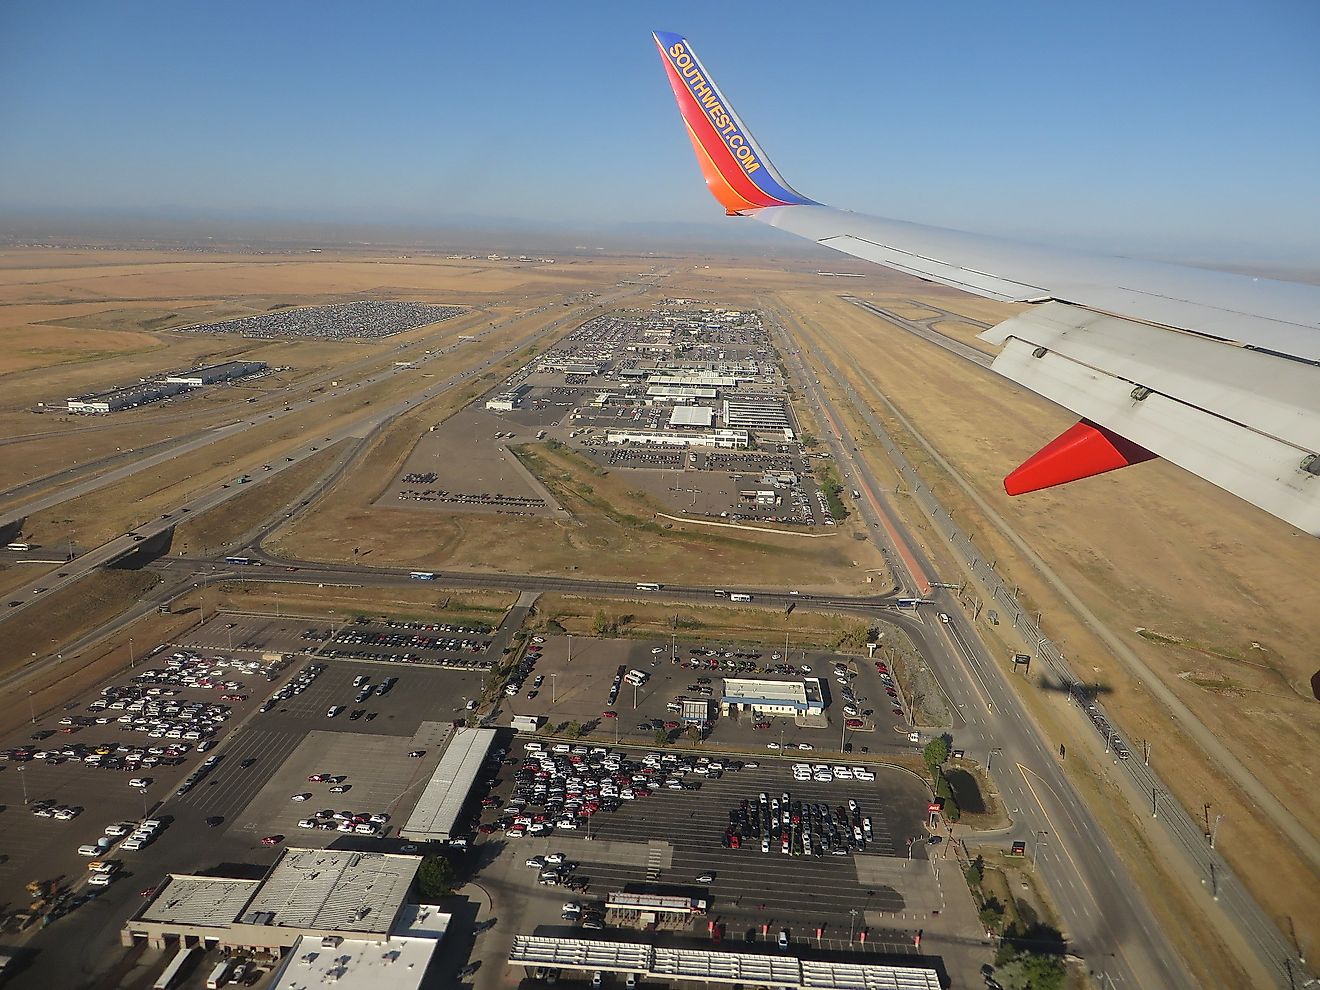 Landing at Denver International Airport, Denver, Colorado. Image credit: Ken Lund/Shutterstock.com